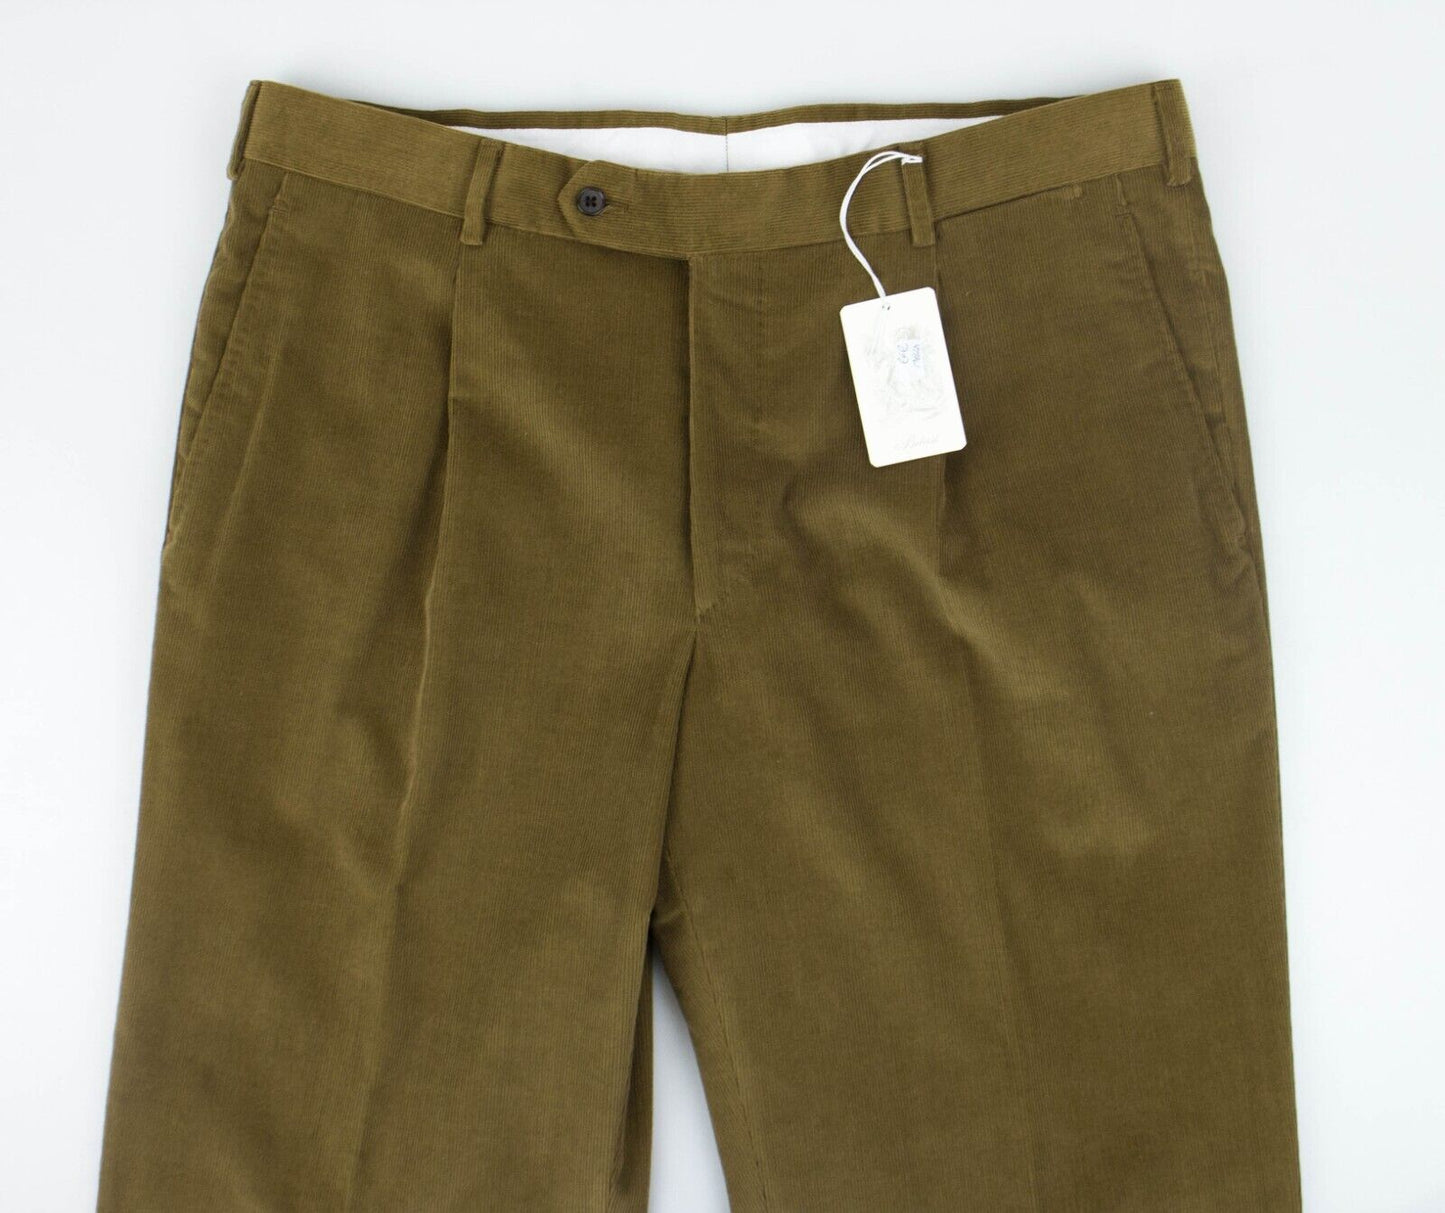 Belvest Brown Cotton Blend Corduroy Casual Pants